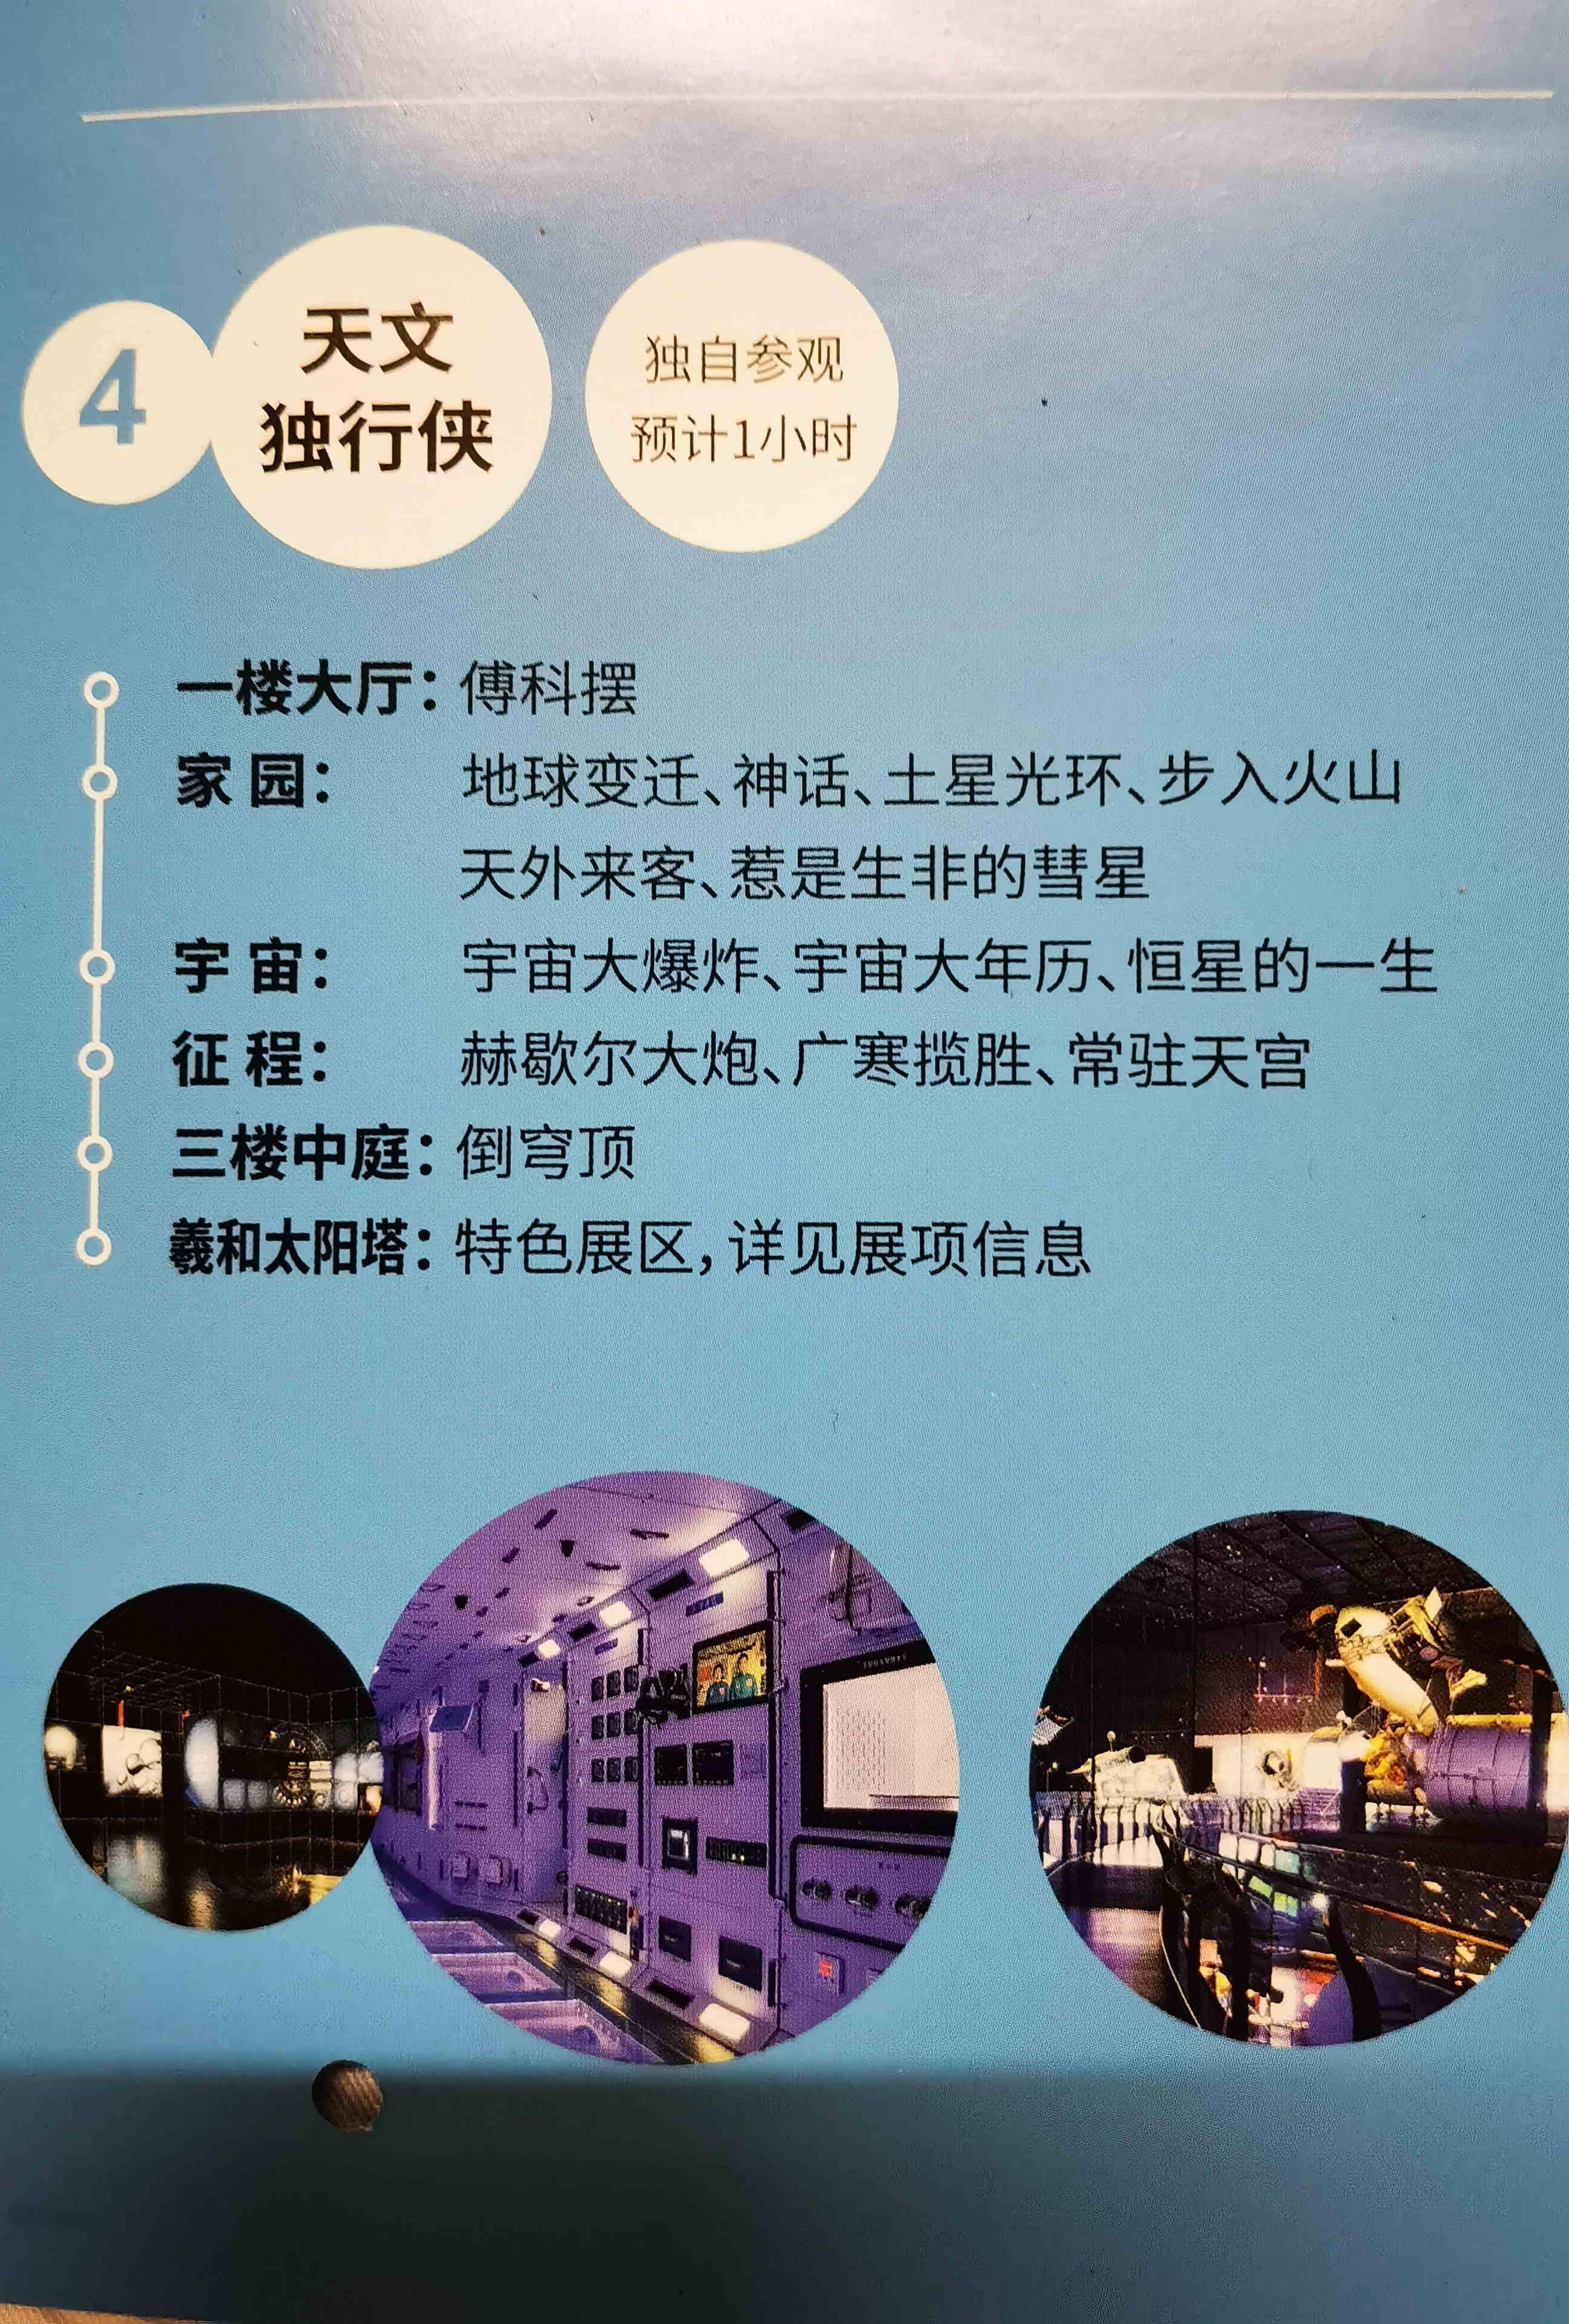 上海天文馆今开馆,一周门票全秒光!